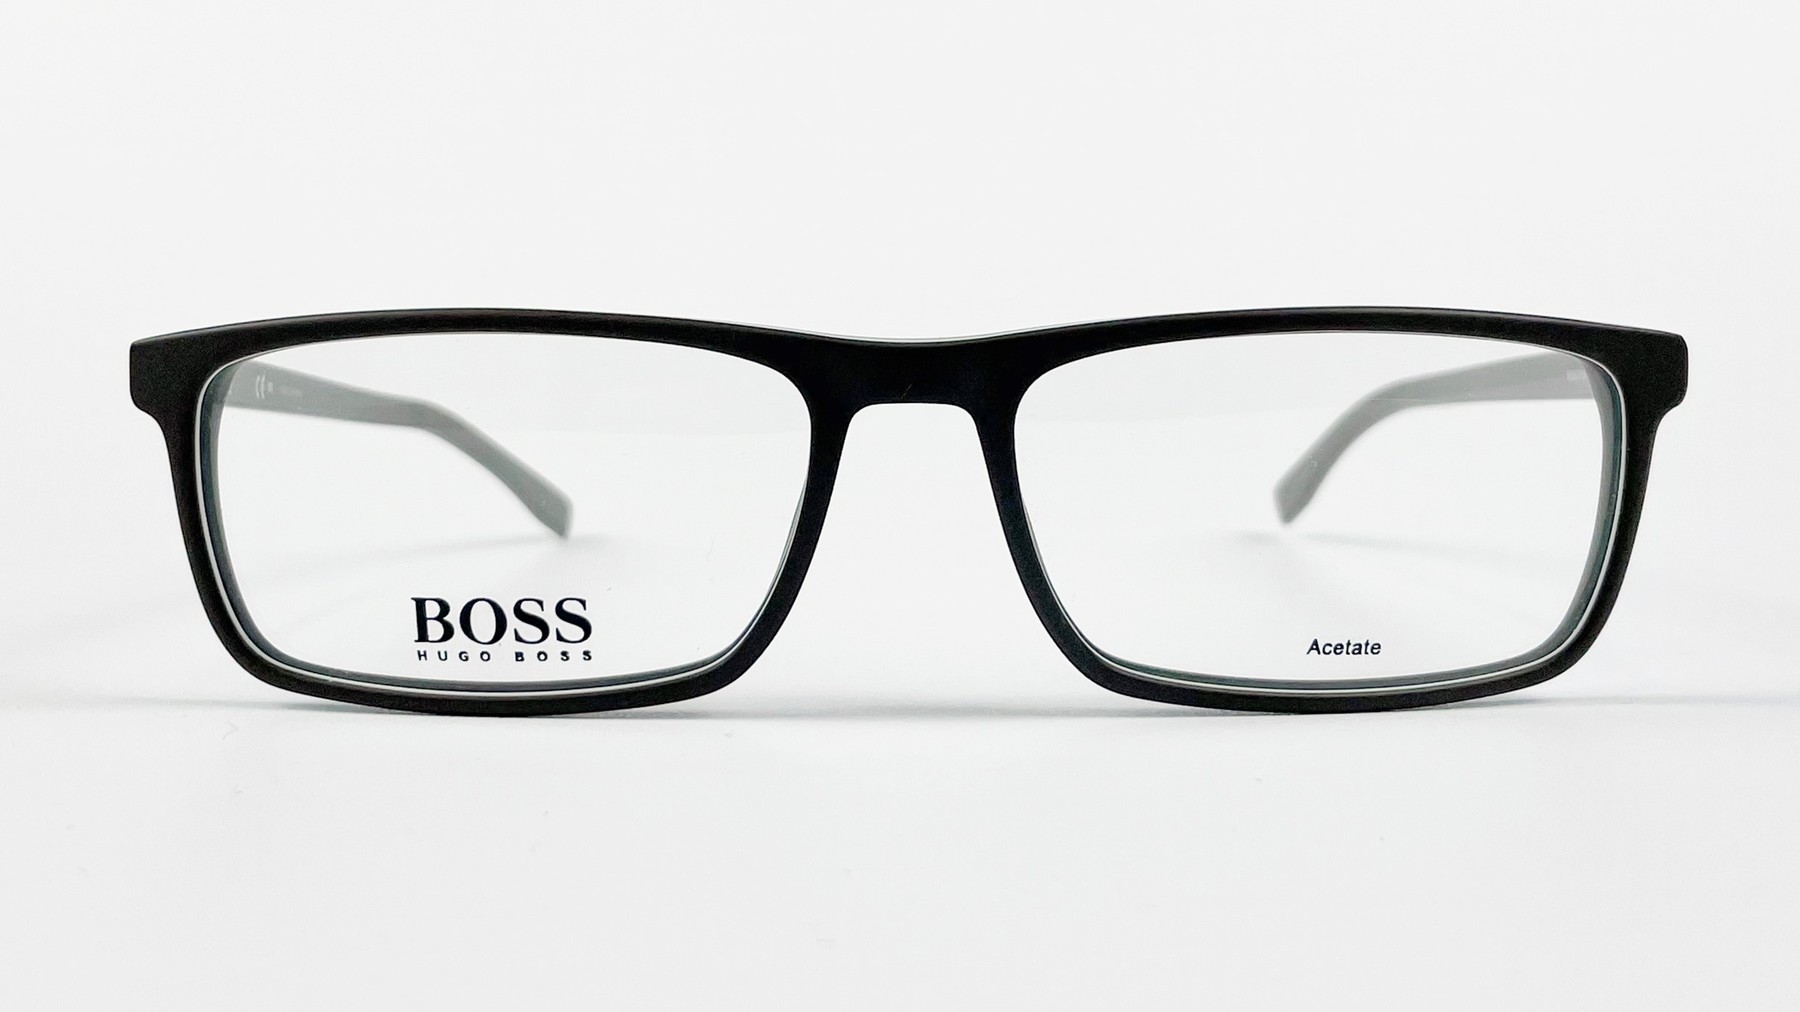 HUGO BOSS 0765 QHK, Korean glasses, sunglasses, eyeglasses, glasses